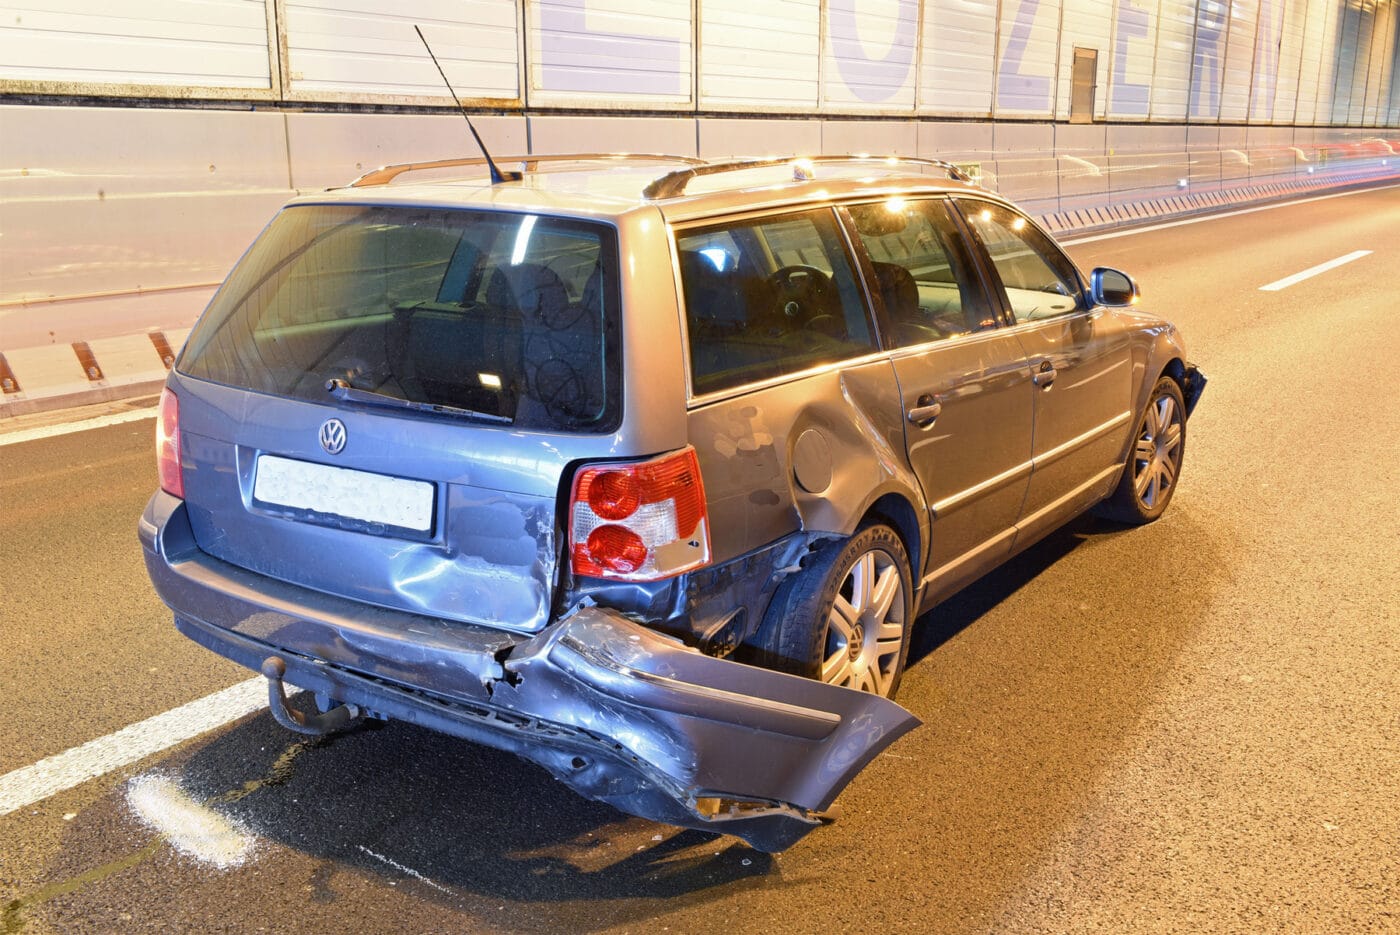 Kollision von vier Fahrzeugen – zwei Personen leicht verletzt